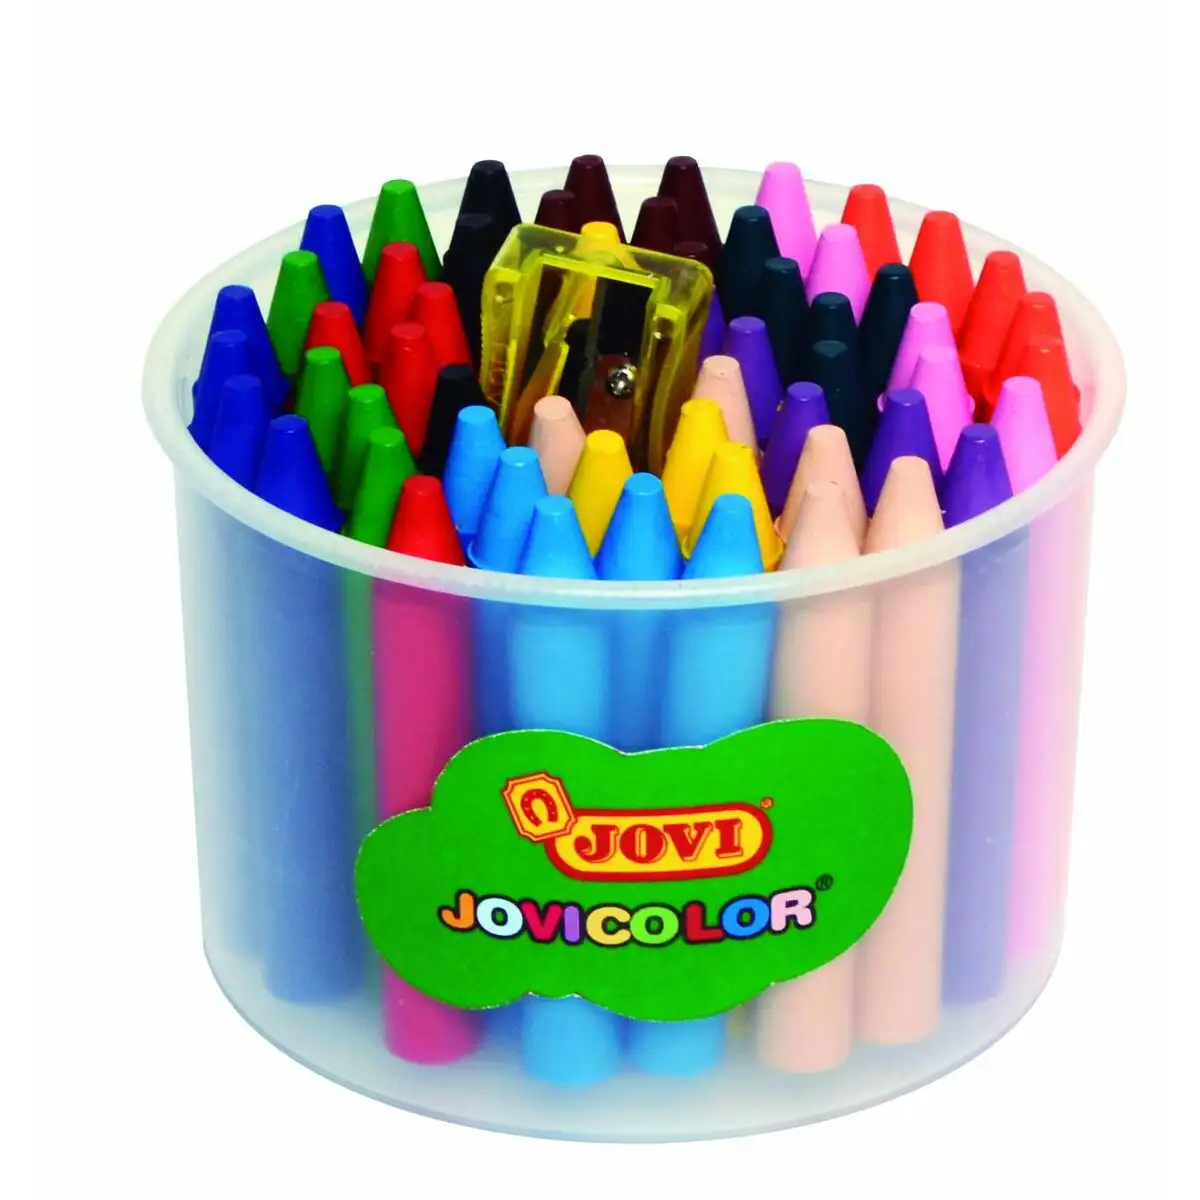 Crayons gras de couleur jovi jovicolor multicouleur_6319. DIAYTAR SENEGAL - Où Choisir est un Plaisir. Explorez notre boutique en ligne et choisissez parmi des produits de qualité qui satisferont vos besoins et vos goûts.